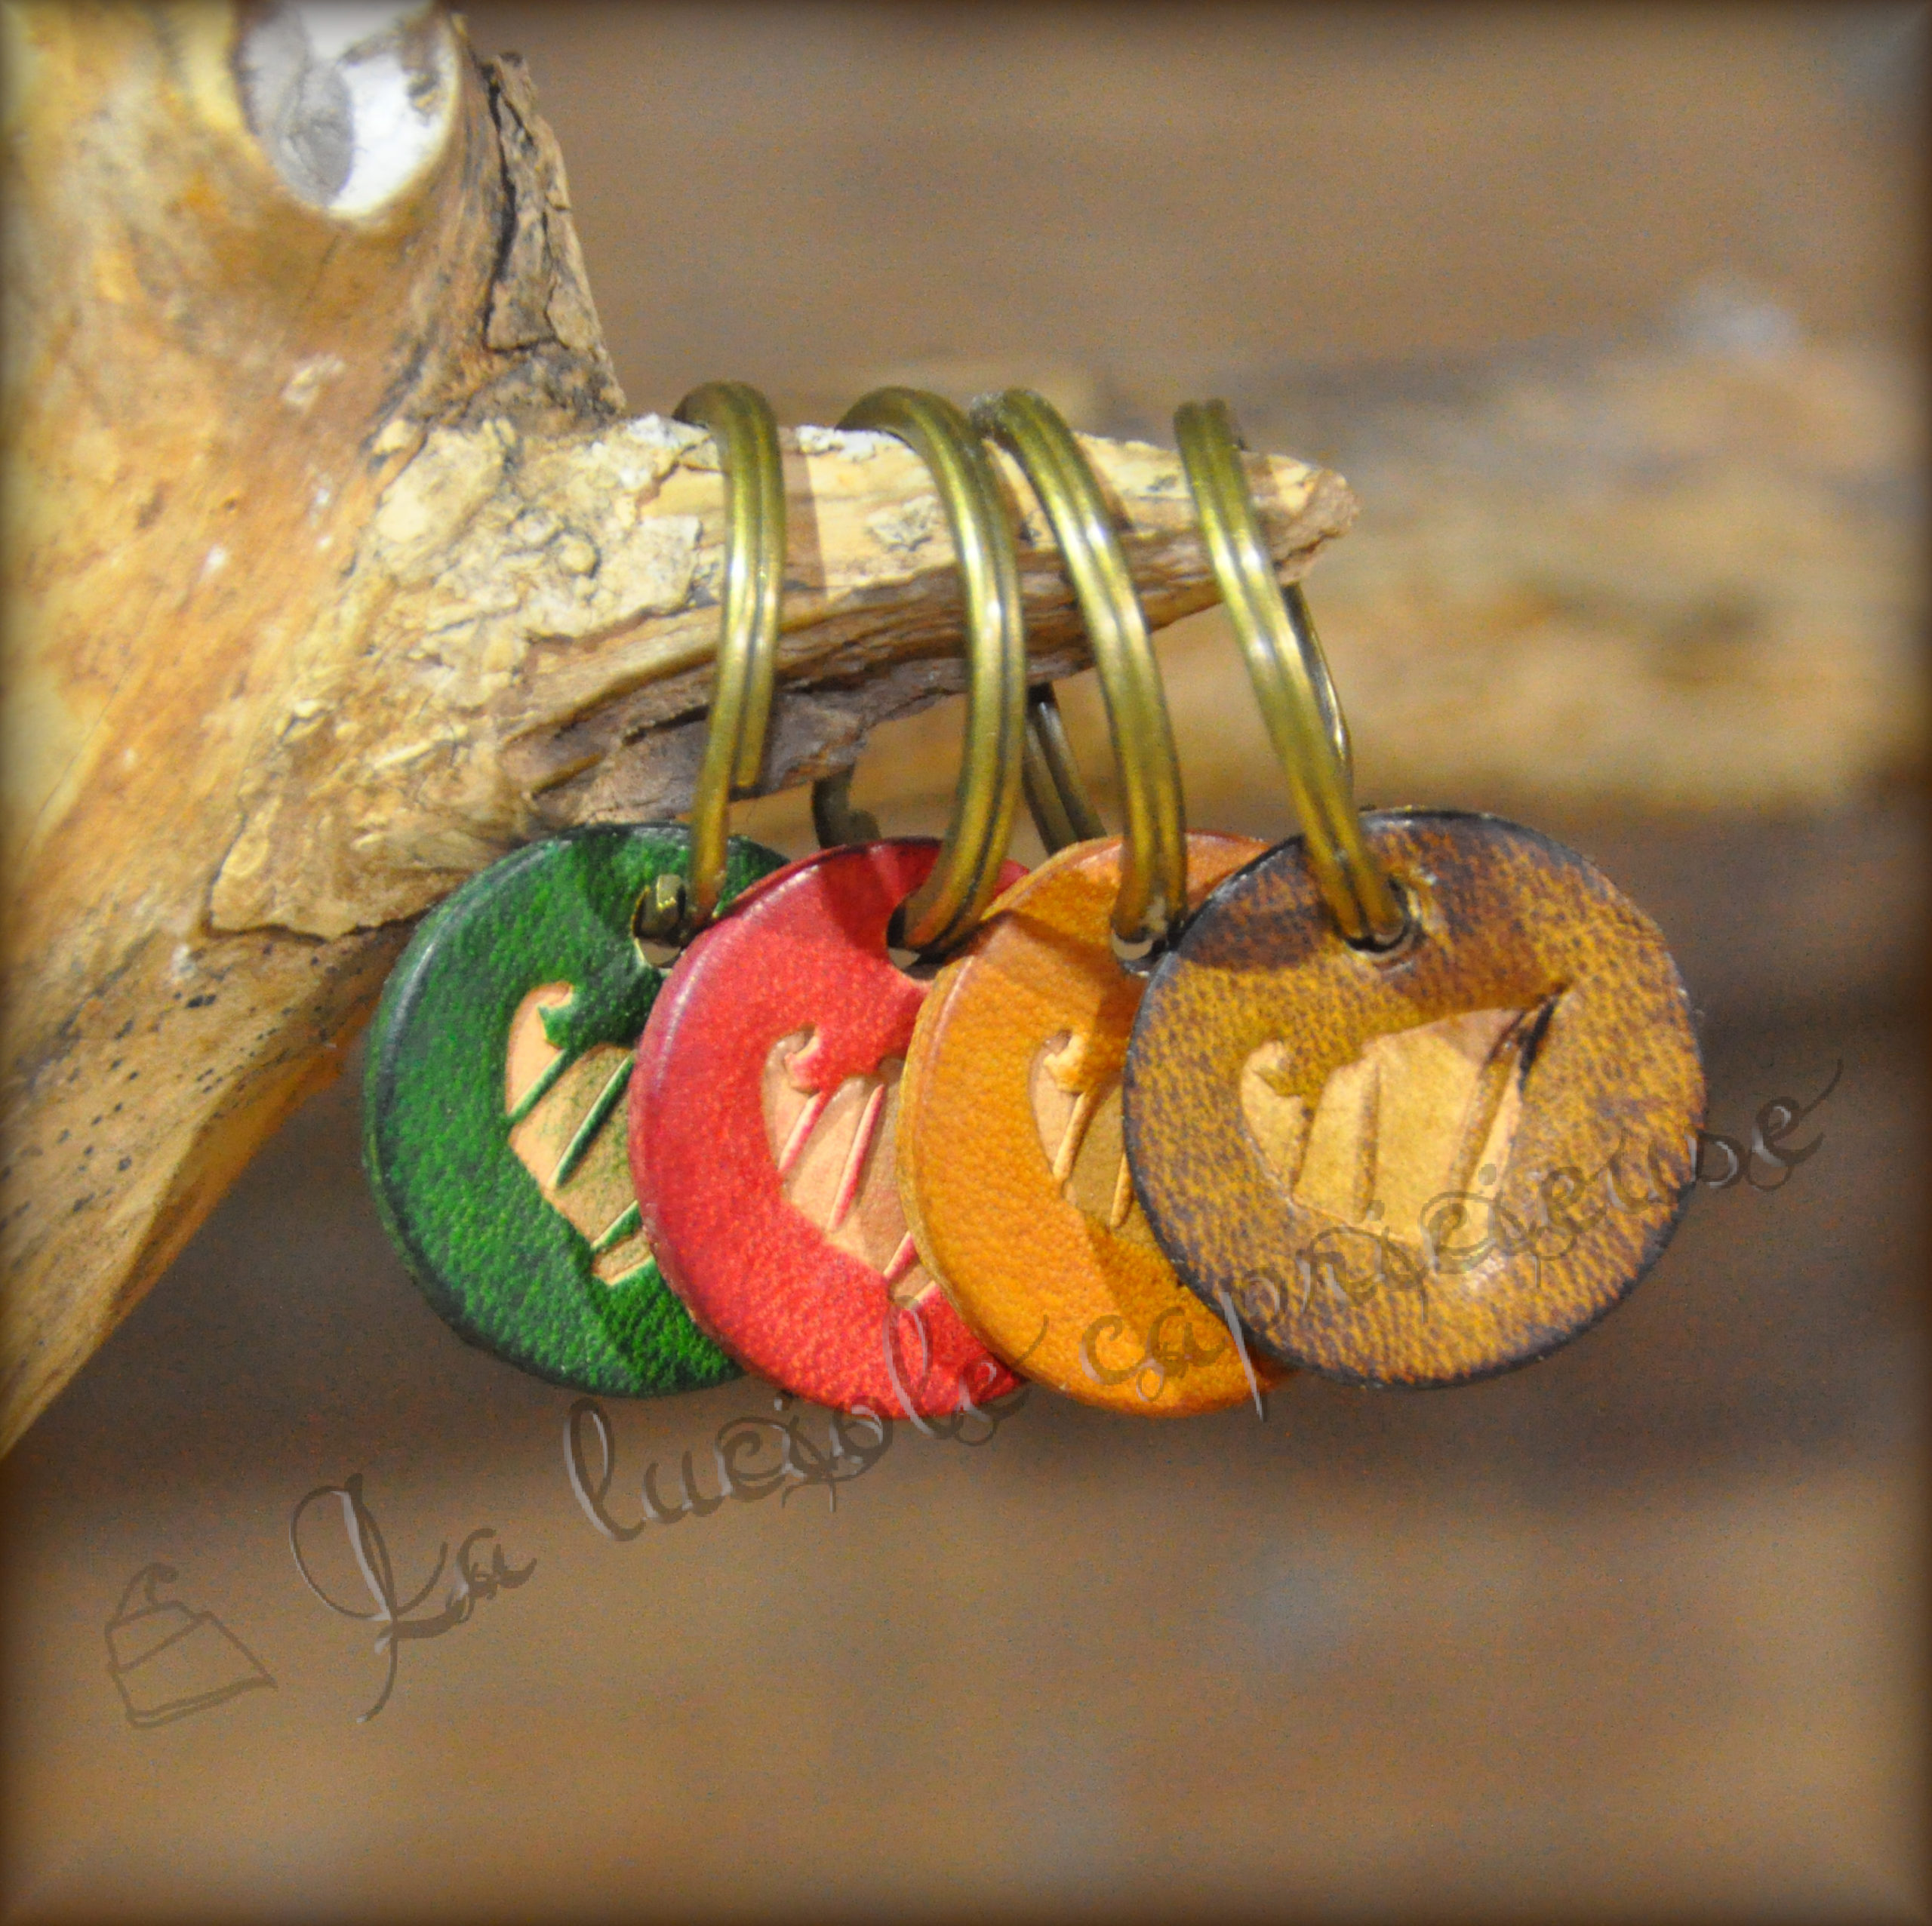 Lot de quatre porte-clés en cuir de bovin tanné végétal, logo en relief, teintés de plusieurs couleurs